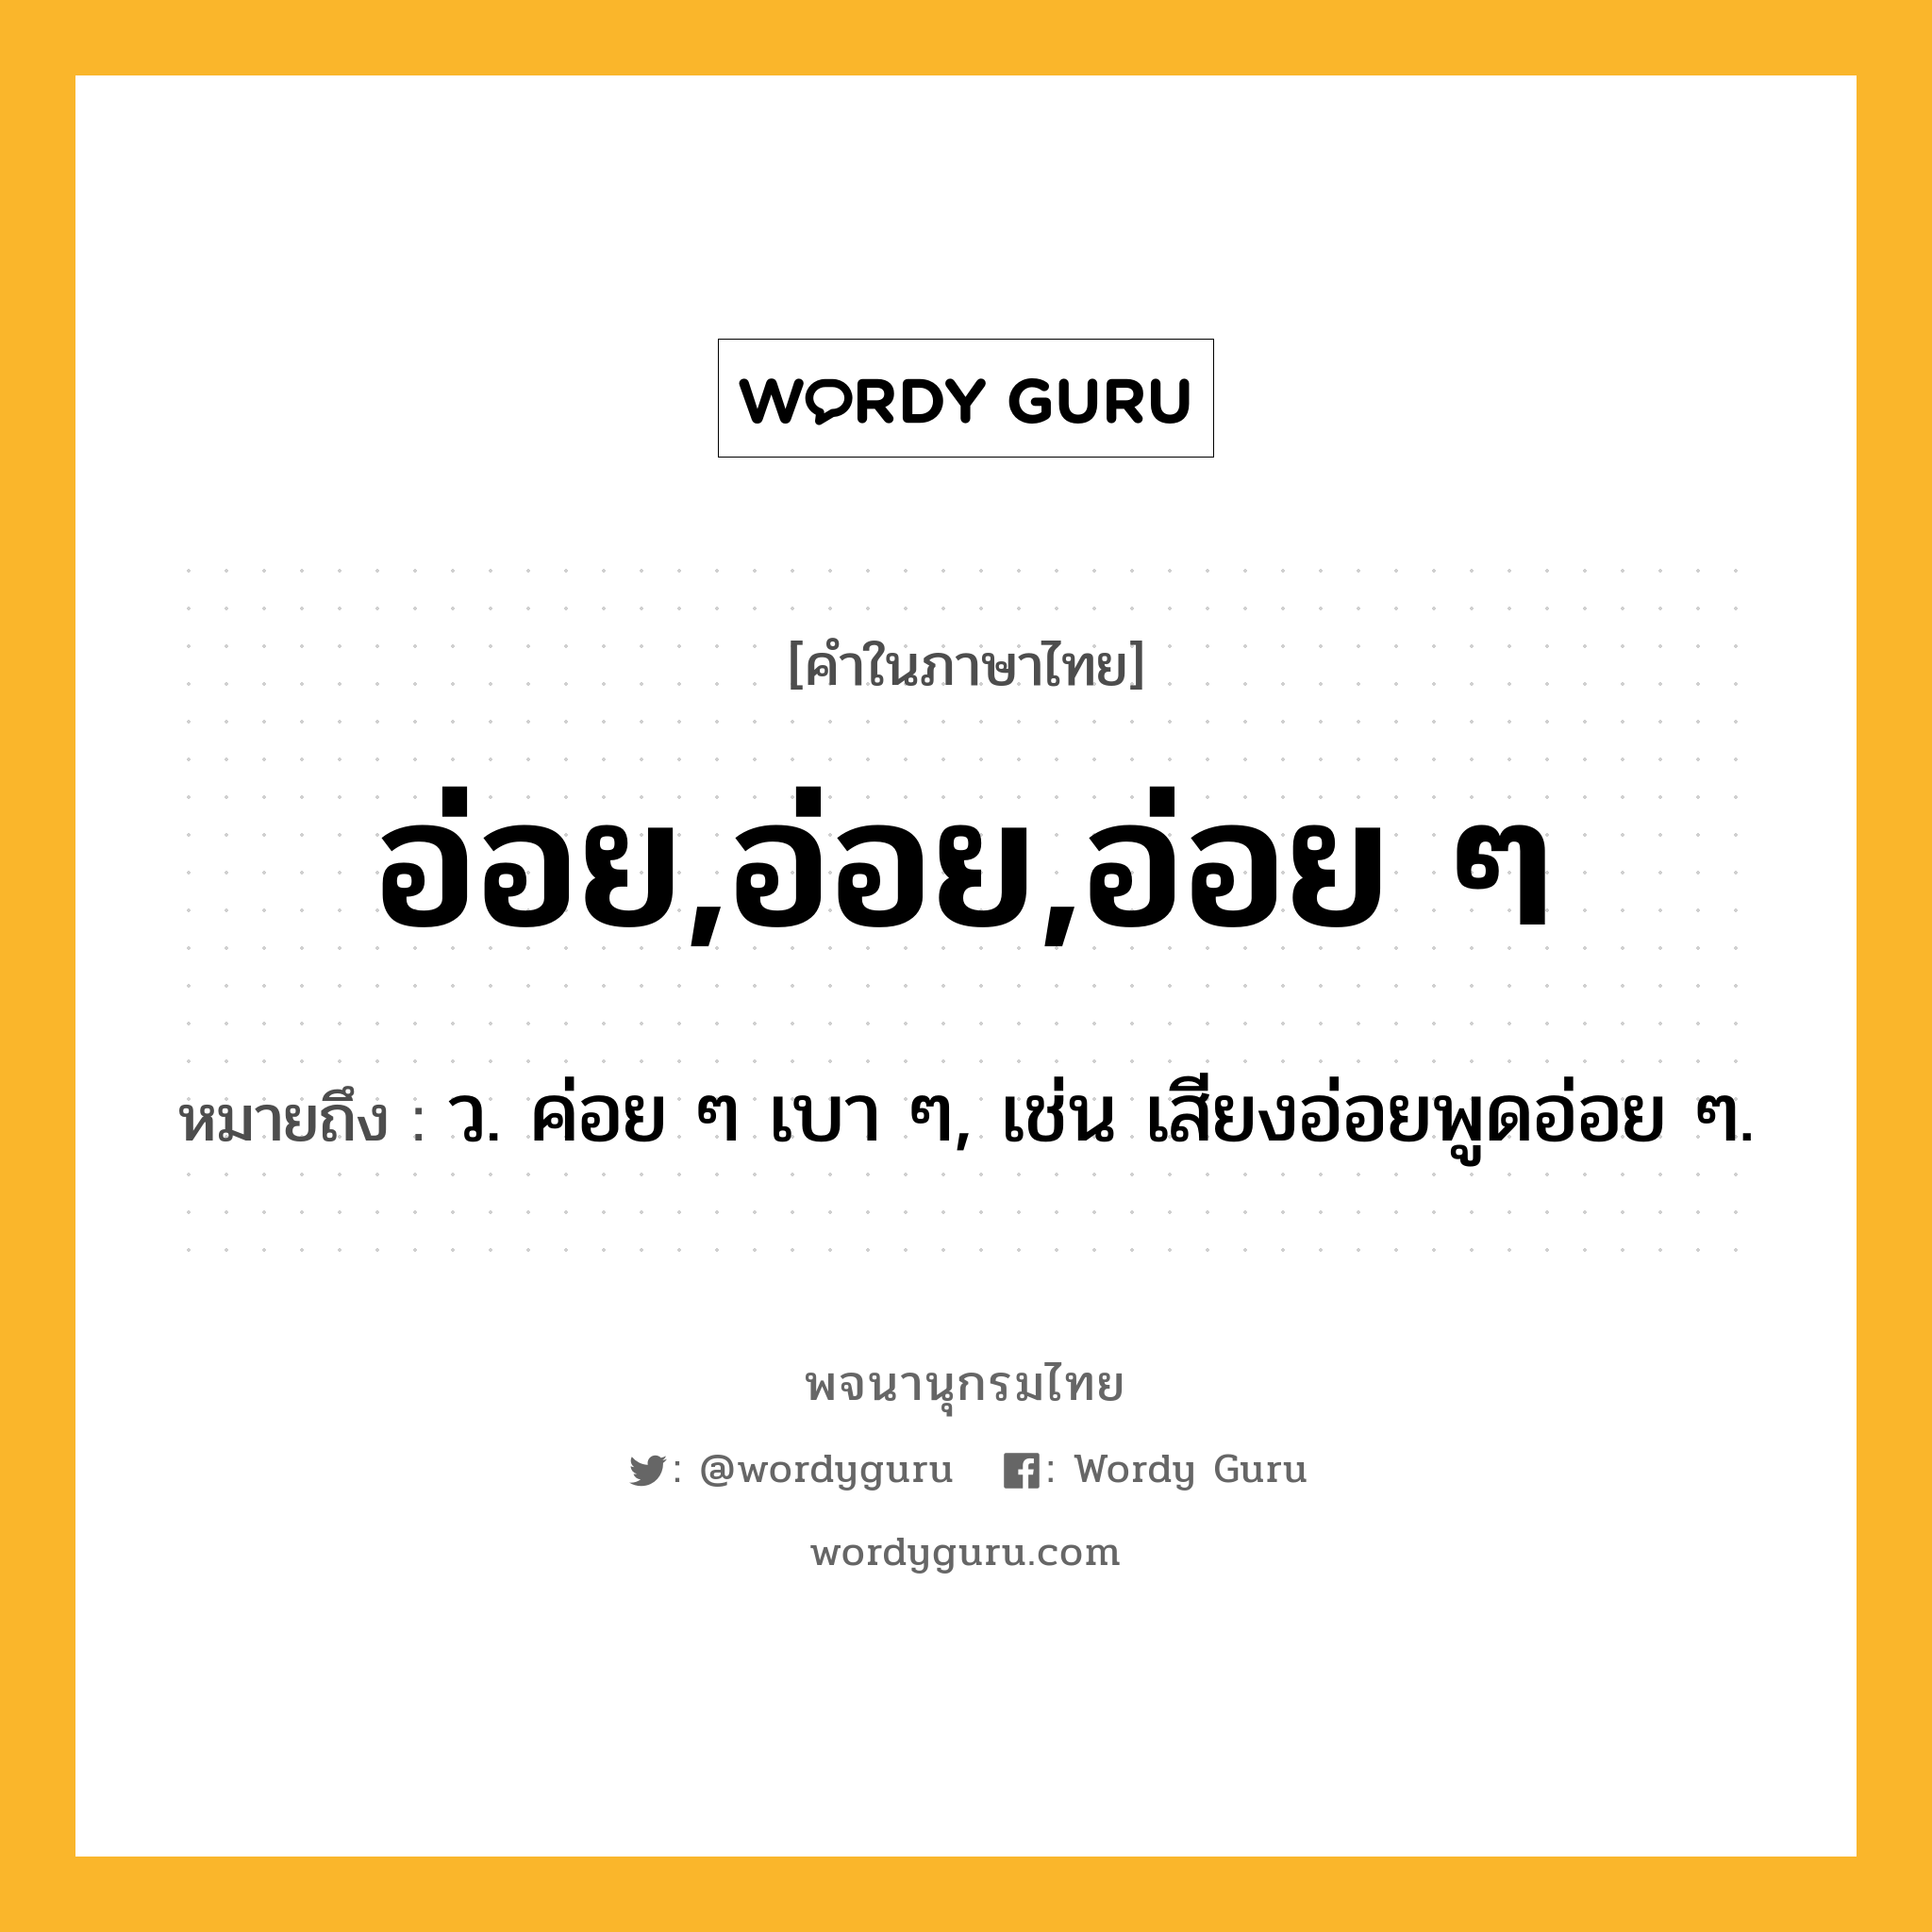 อ่อย,อ่อย,อ่อย ๆ ความหมาย หมายถึงอะไร?, คำในภาษาไทย อ่อย,อ่อย,อ่อย ๆ หมายถึง ว. ค่อย ๆ เบา ๆ, เช่น เสียงอ่อยพูดอ่อย ๆ.